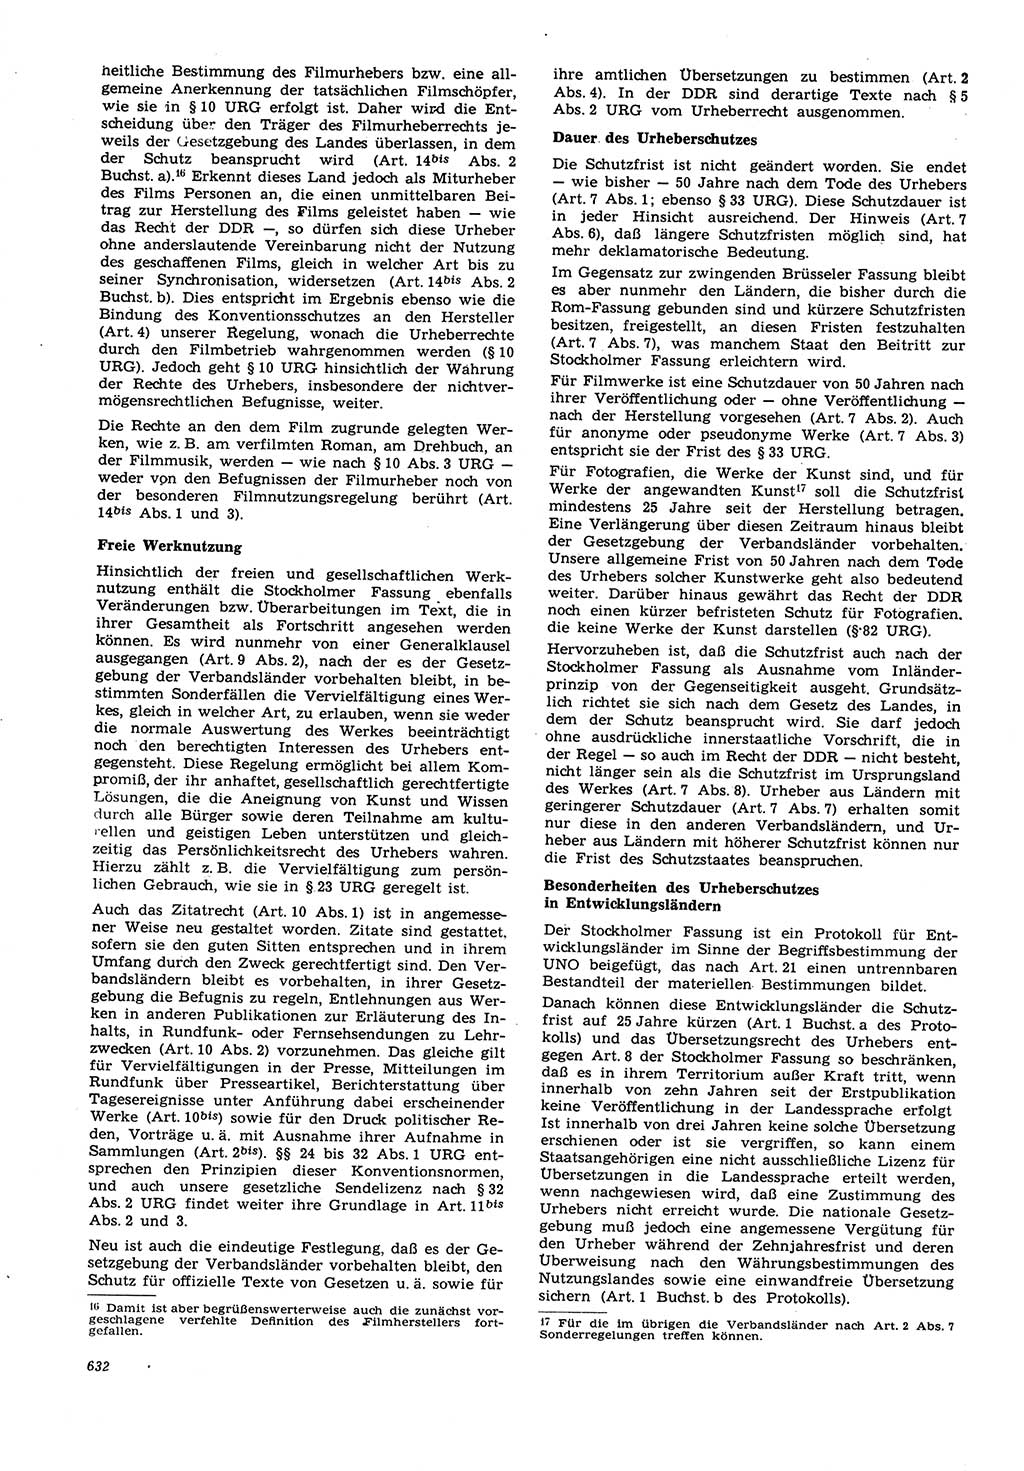 Neue Justiz (NJ), Zeitschrift für Recht und Rechtswissenschaft [Deutsche Demokratische Republik (DDR)], 21. Jahrgang 1967, Seite 632 (NJ DDR 1967, S. 632)